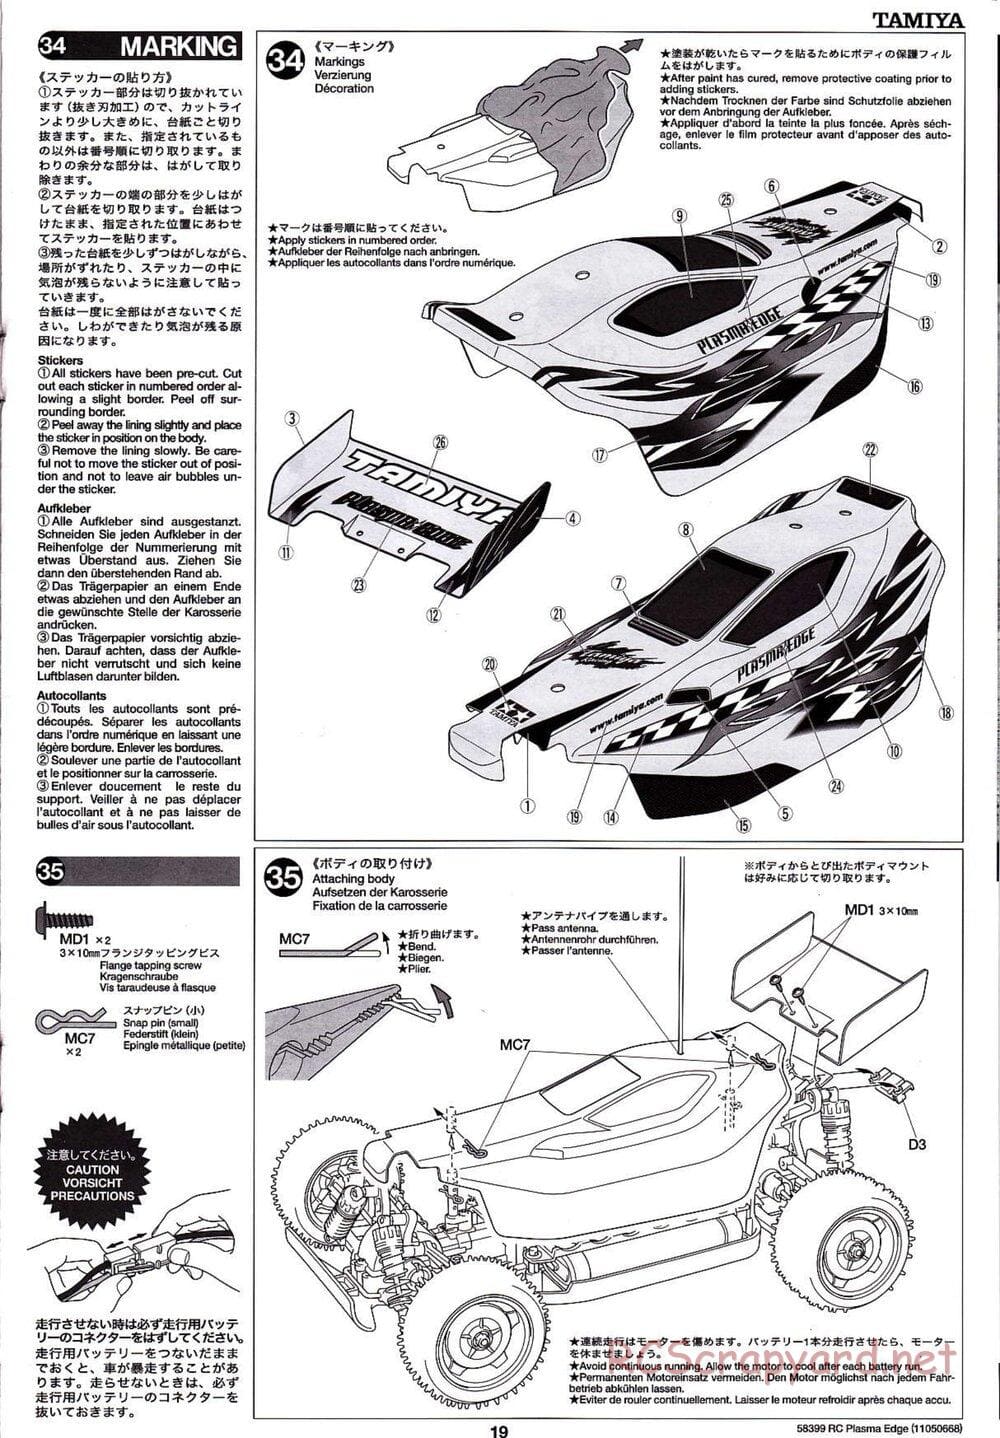 Tamiya - Plasma Edge Chassis - Manual - Page 19